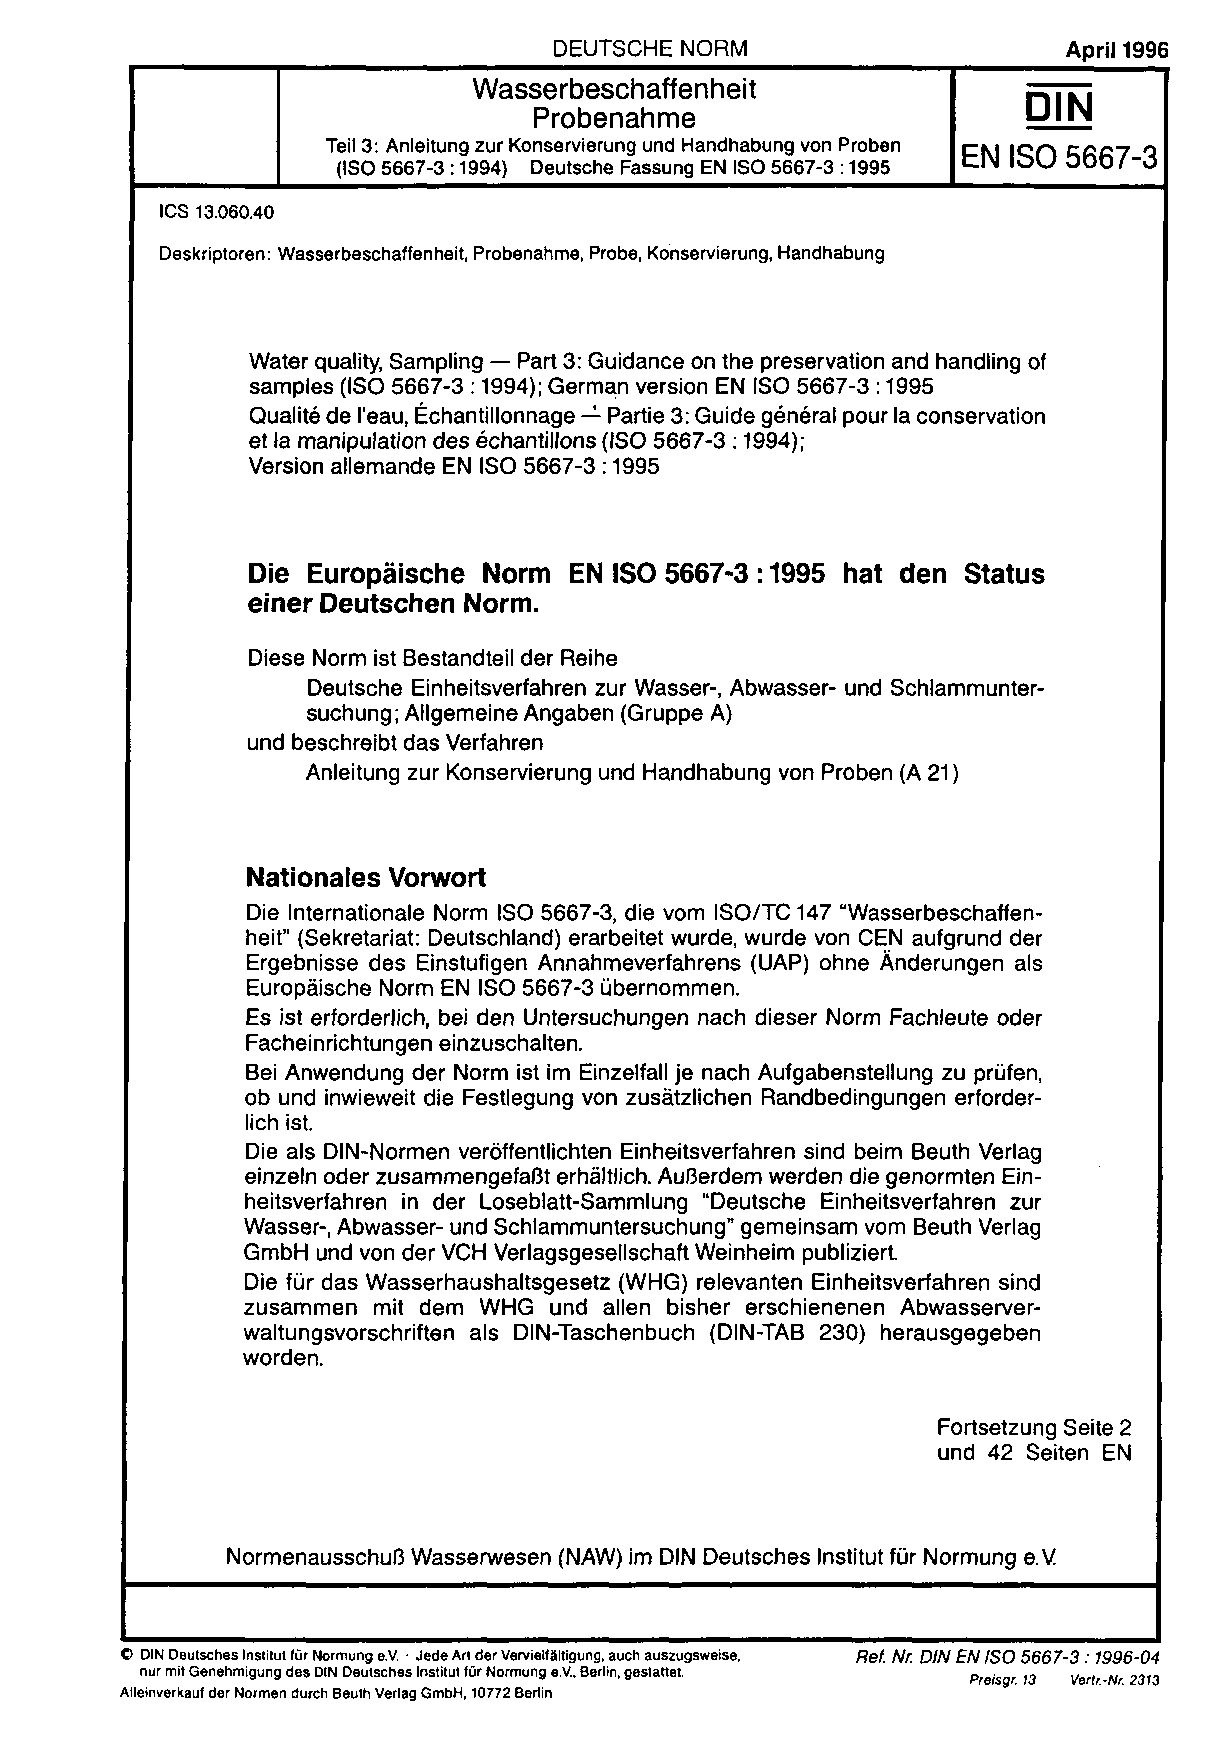 DIN EN ISO 5667-3:1996封面图